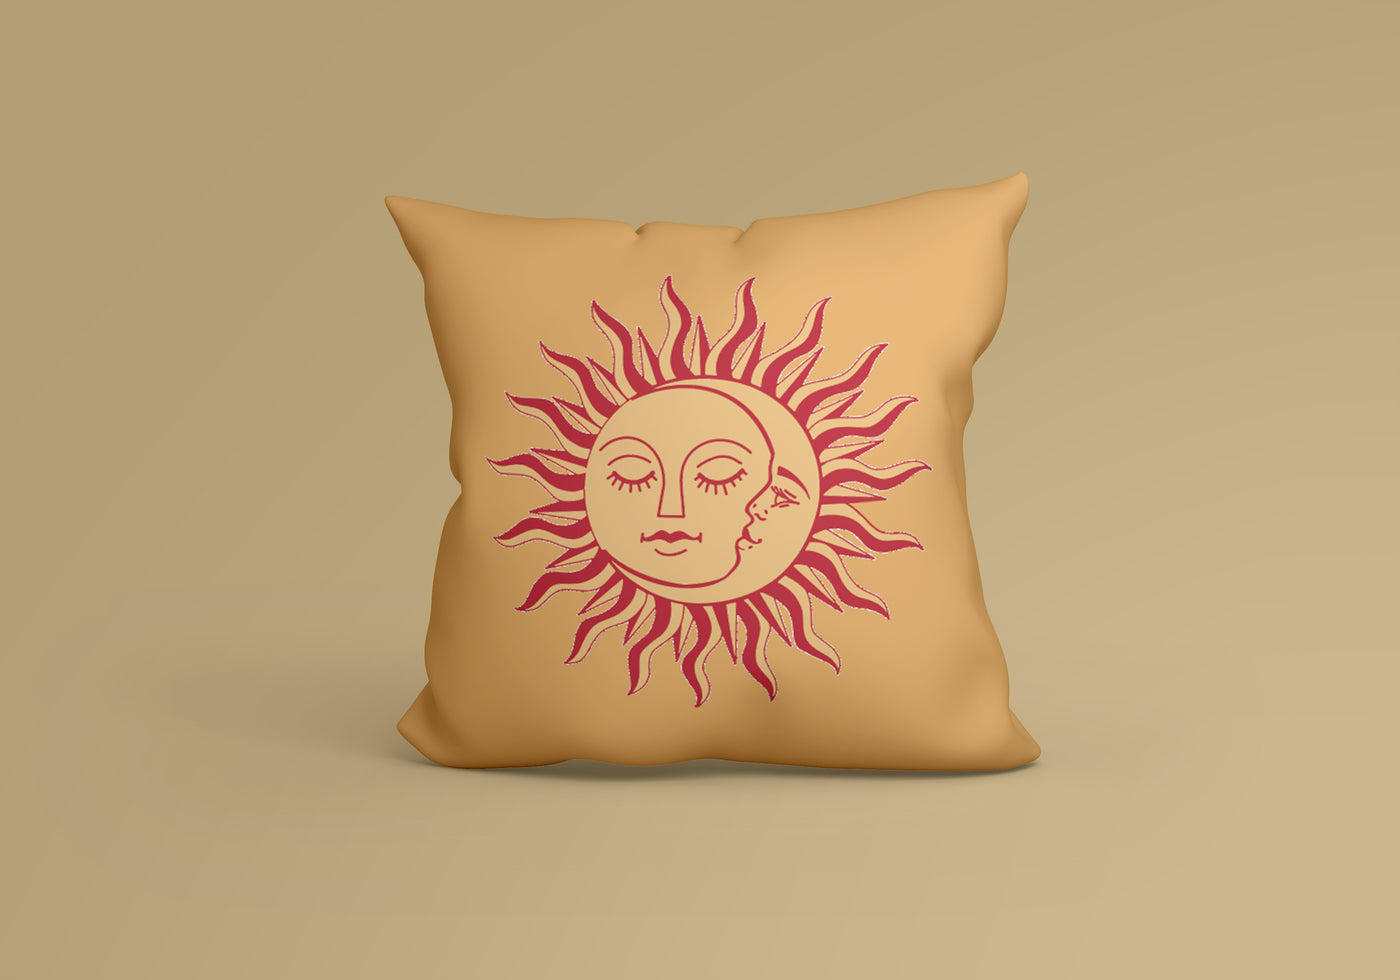 Sun & Moon Cushion